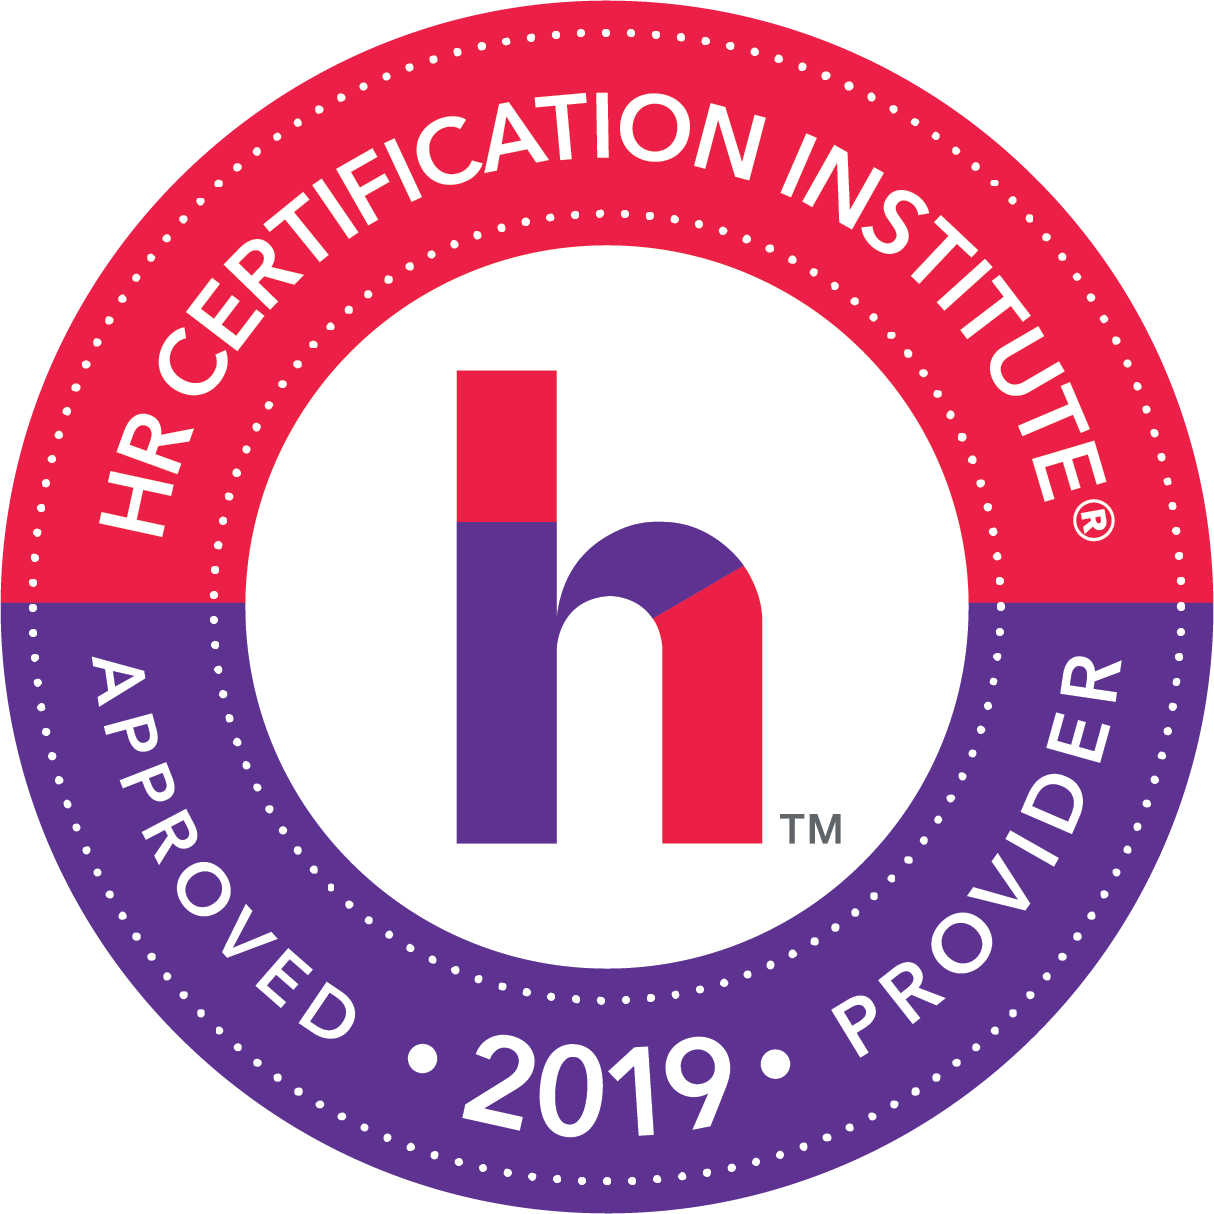 HR Certification Institute’s® (HRCI®) 